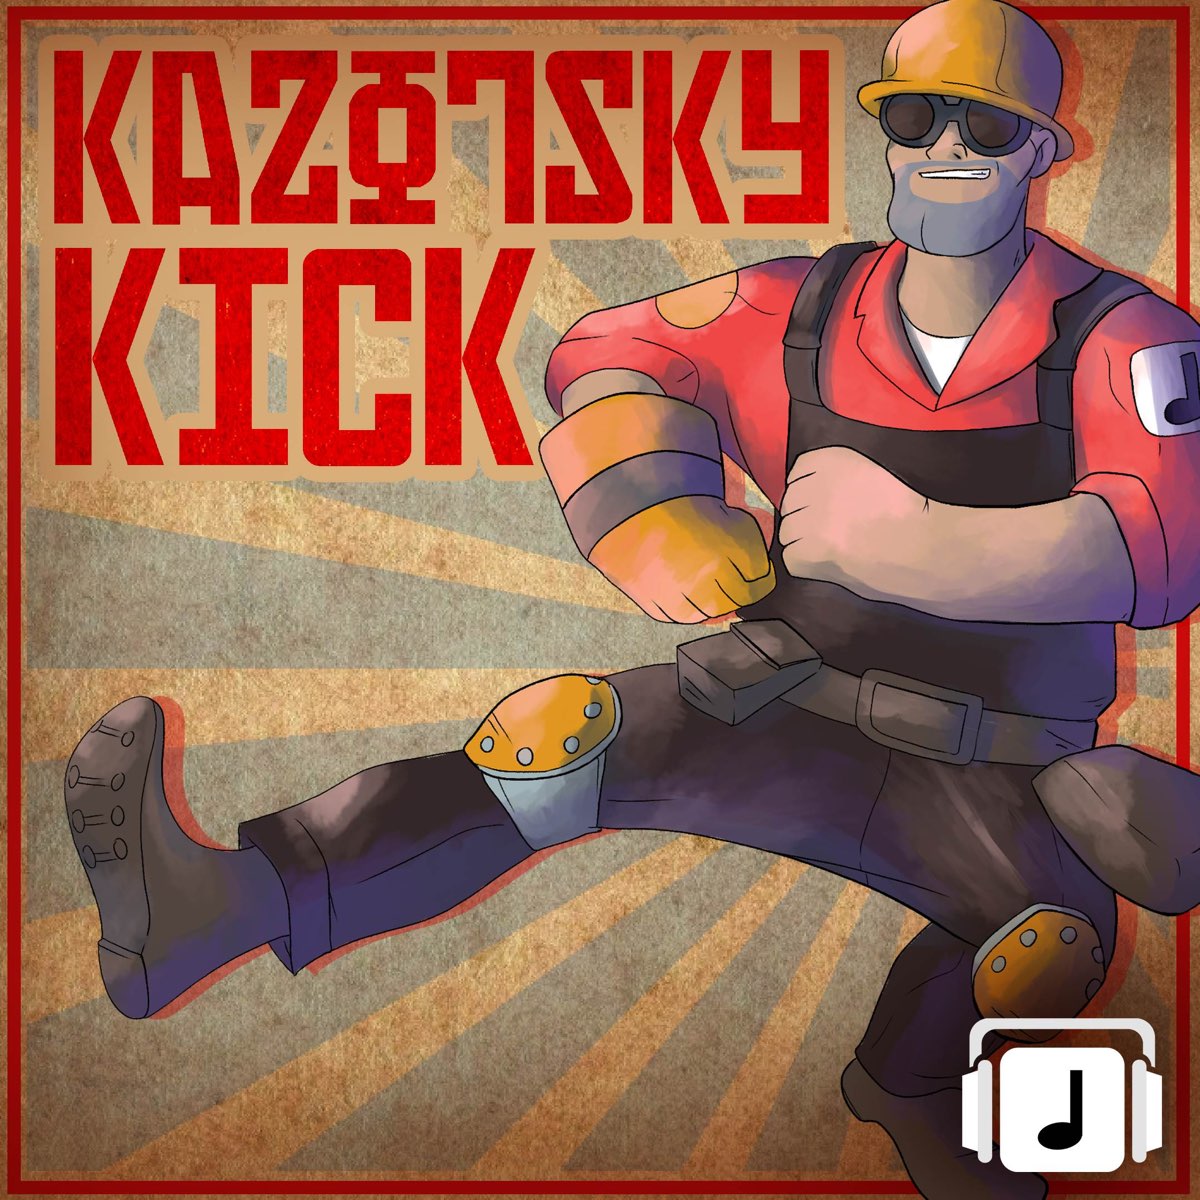 Kazotsky kick tf2 steam фото 14